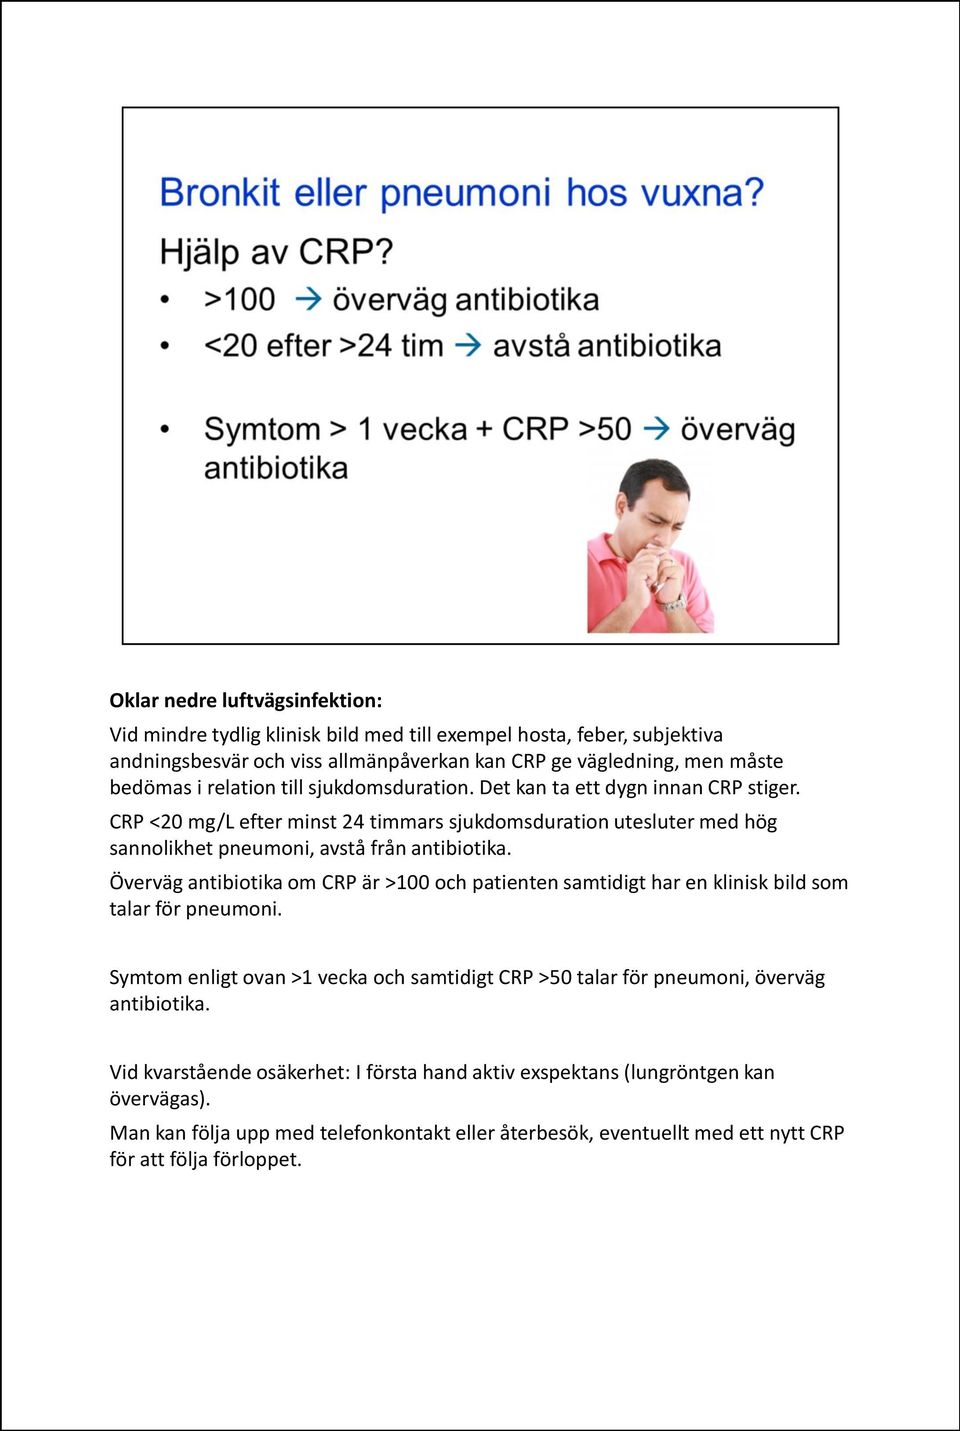 Överväg antibiotika om CRP är >100 och patienten samtidigt har en klinisk bild som talar för pneumoni.